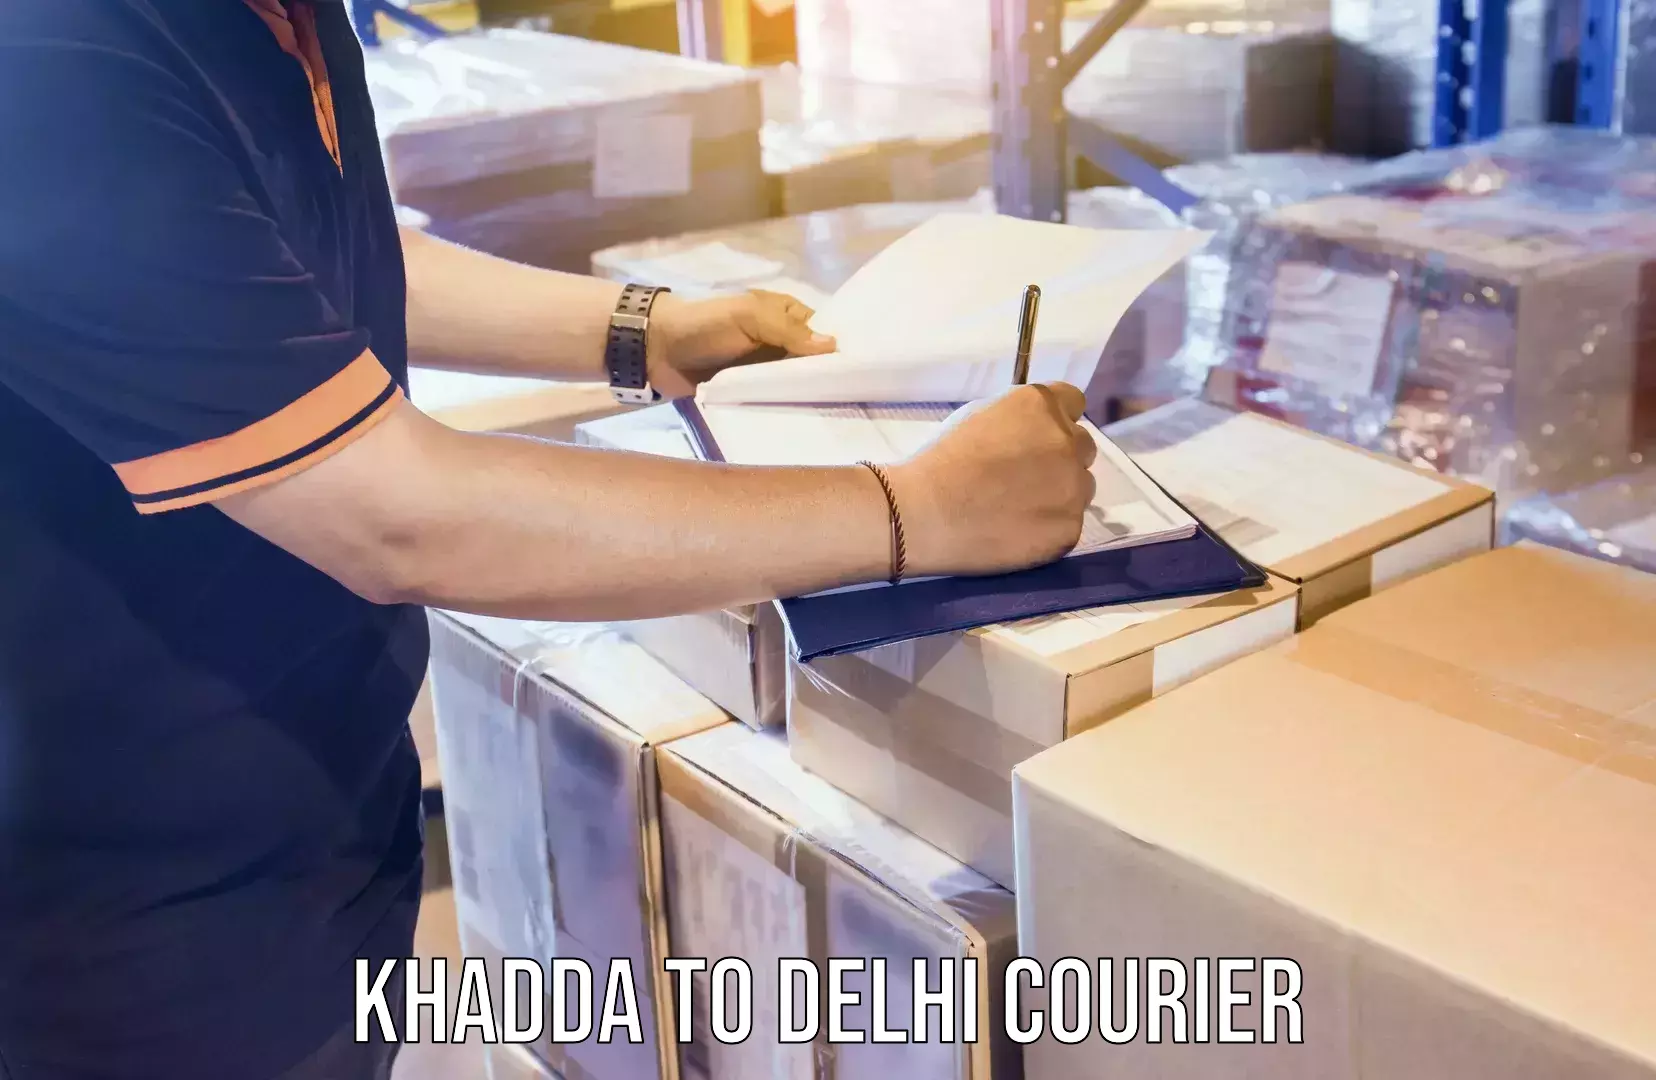 Home shifting experts Khadda to Delhi